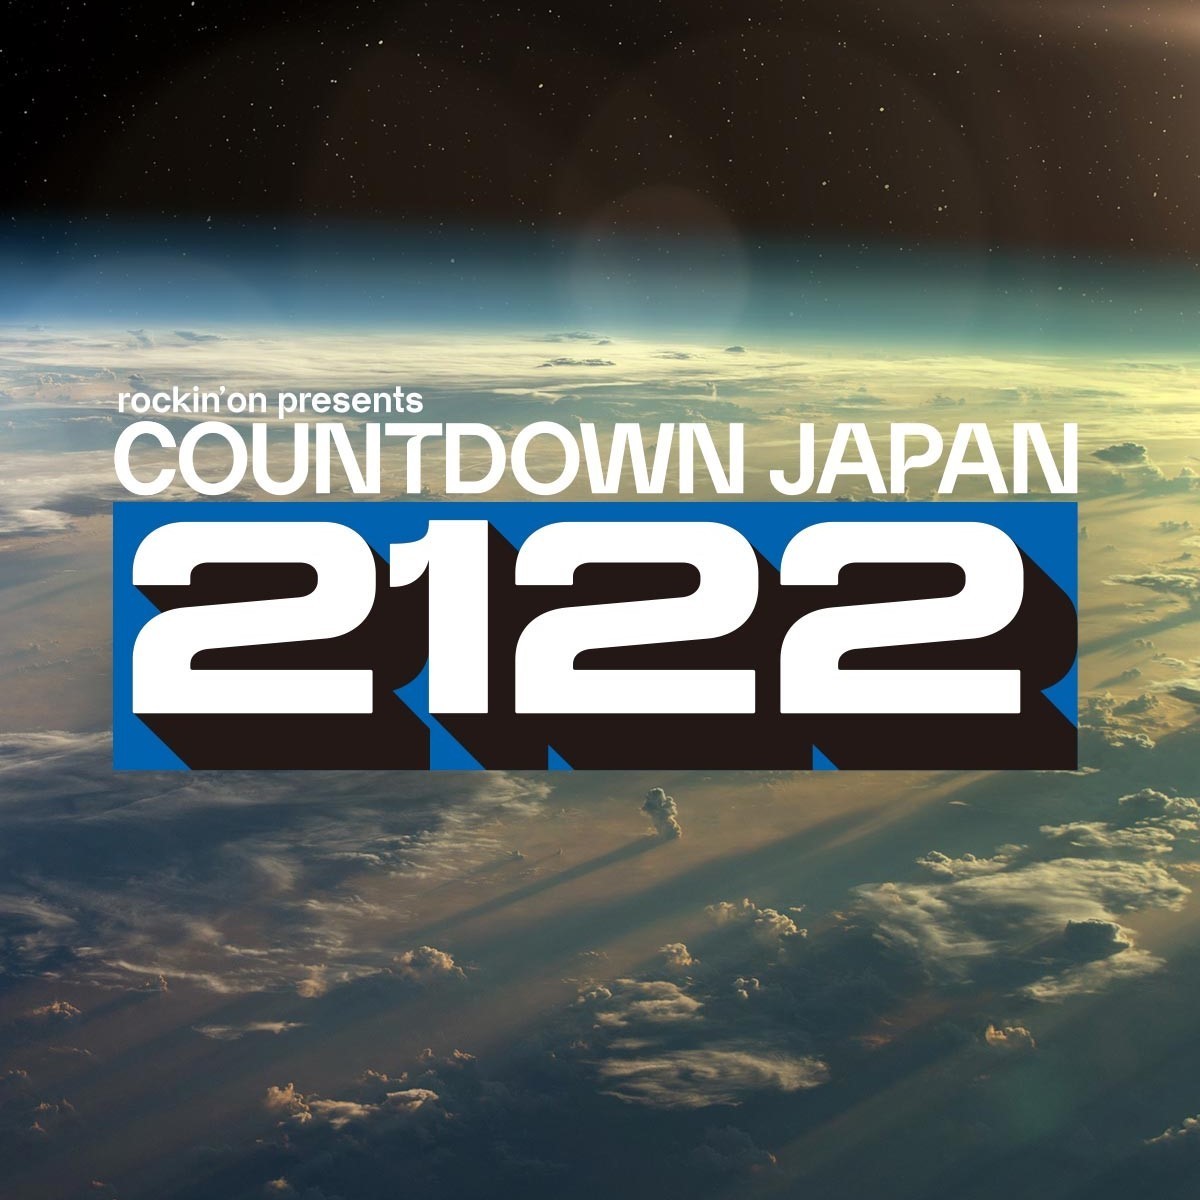 Countdown Japan 21 22 全 出演アーティスト発表でユニゾン マンウィズ Bish ずとまよ Sumika ヤバt サウシー キュウソ 打首ら決定